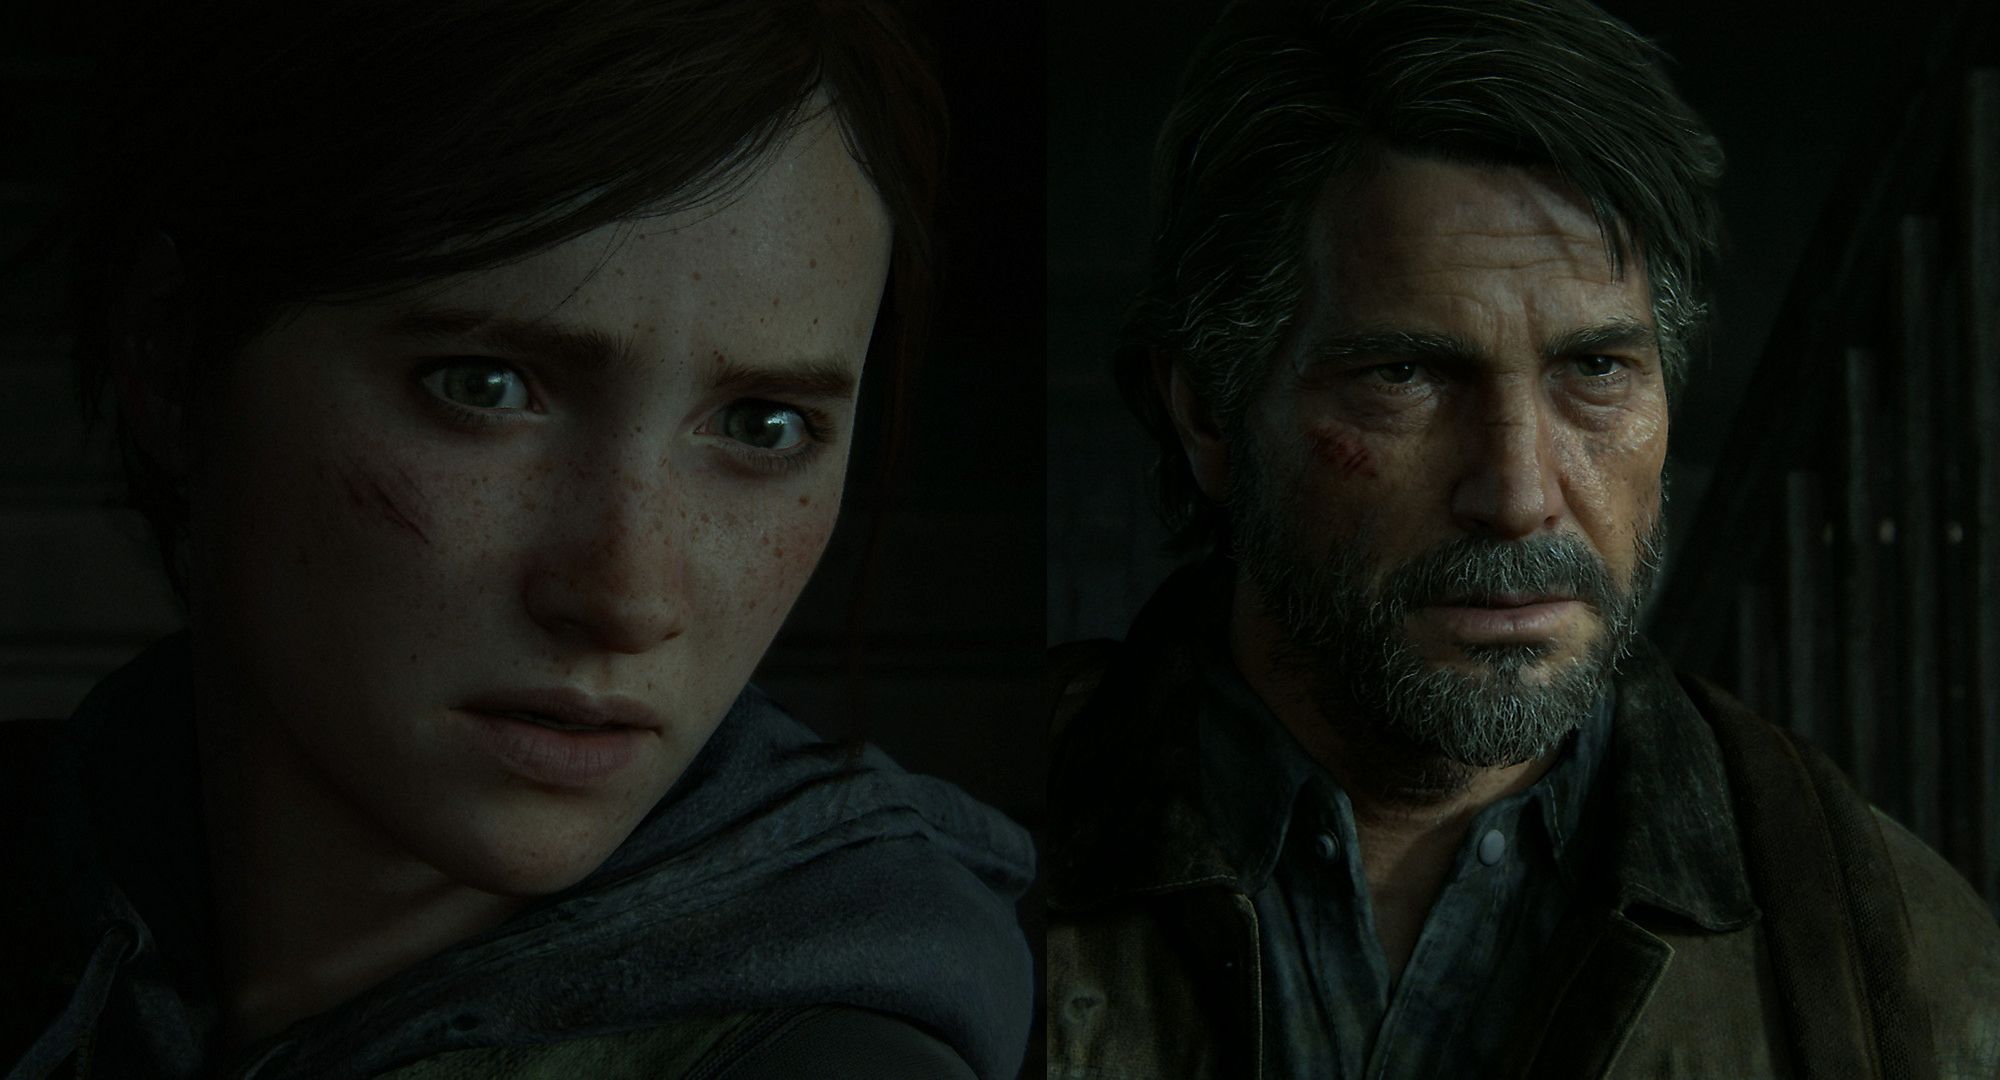 延期のPS4 The Last of Us IIは6月19日、ゴーストオブツシマは7月17日発売